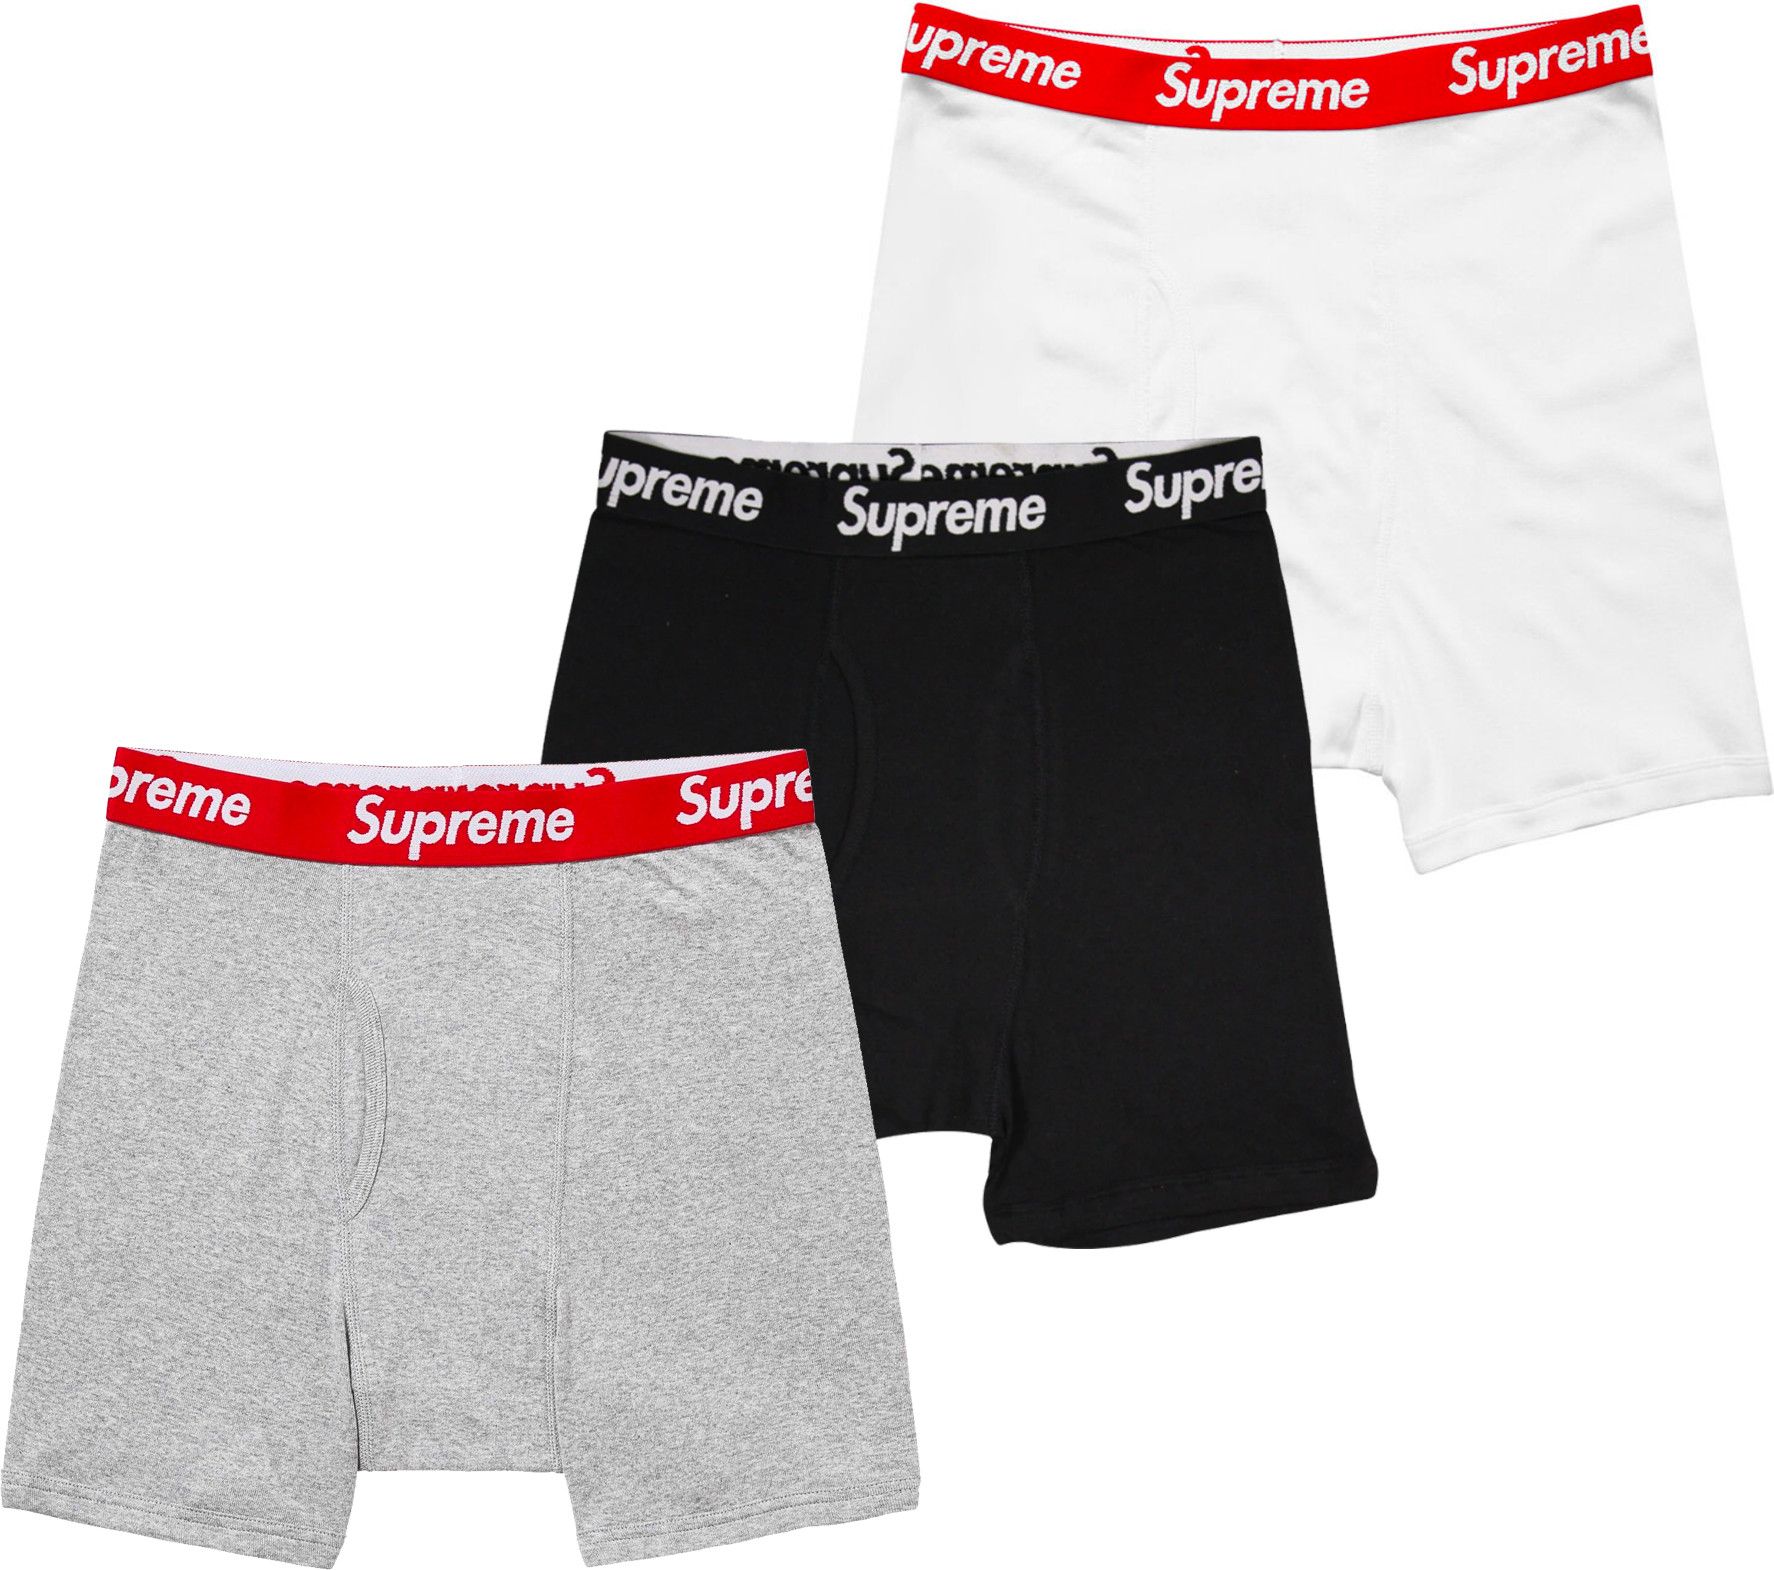 Supreme Small - 3 PACK Supreme Hanes Grey Black White Boxers Briefs